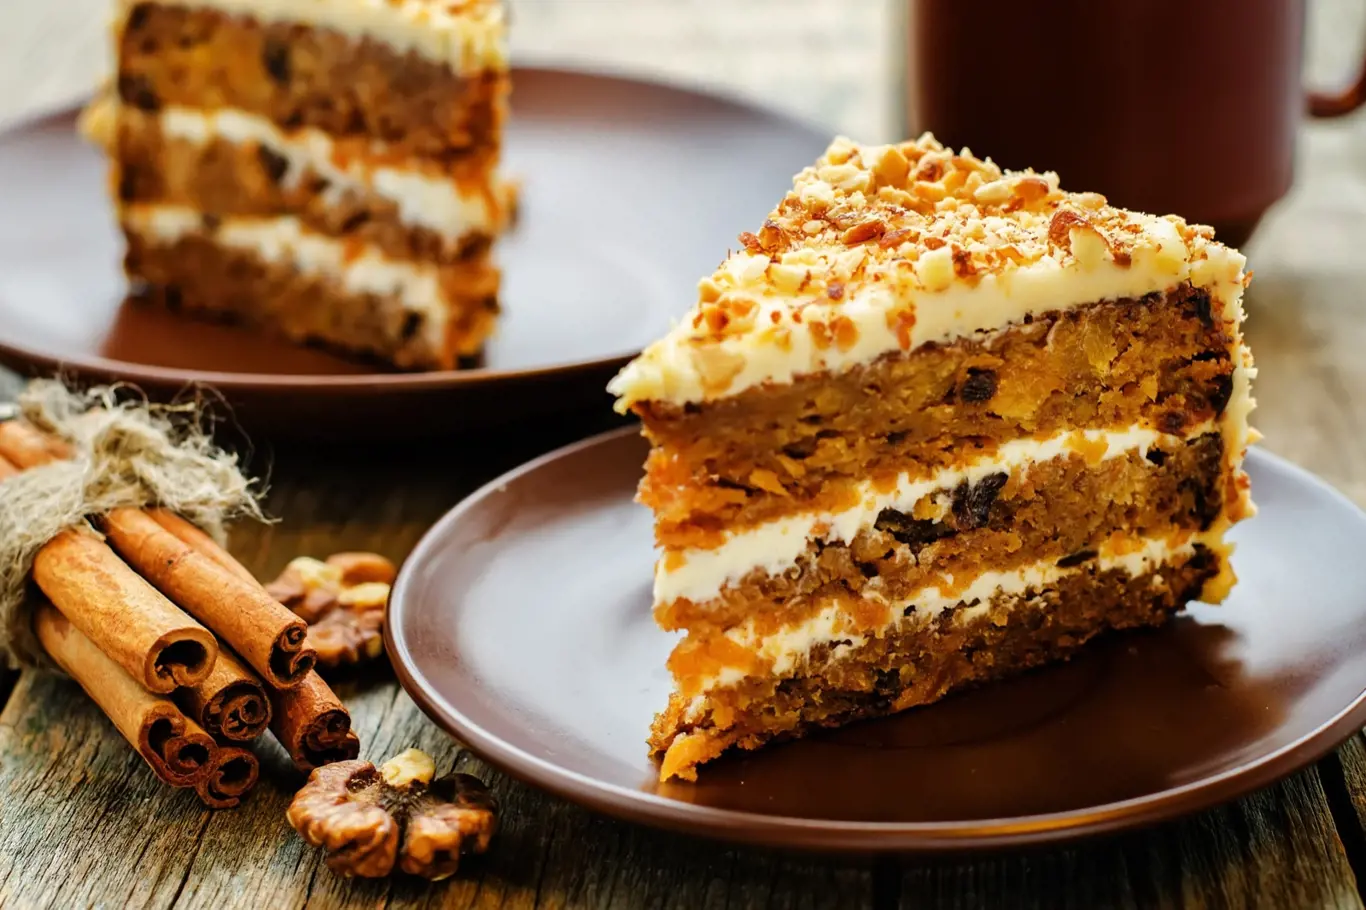 Mrkvový dort s čerstvým sýrem a ořechy dodá vašemu tělu porci karotenů, vlákniny a nenasycených mastných kyselin.